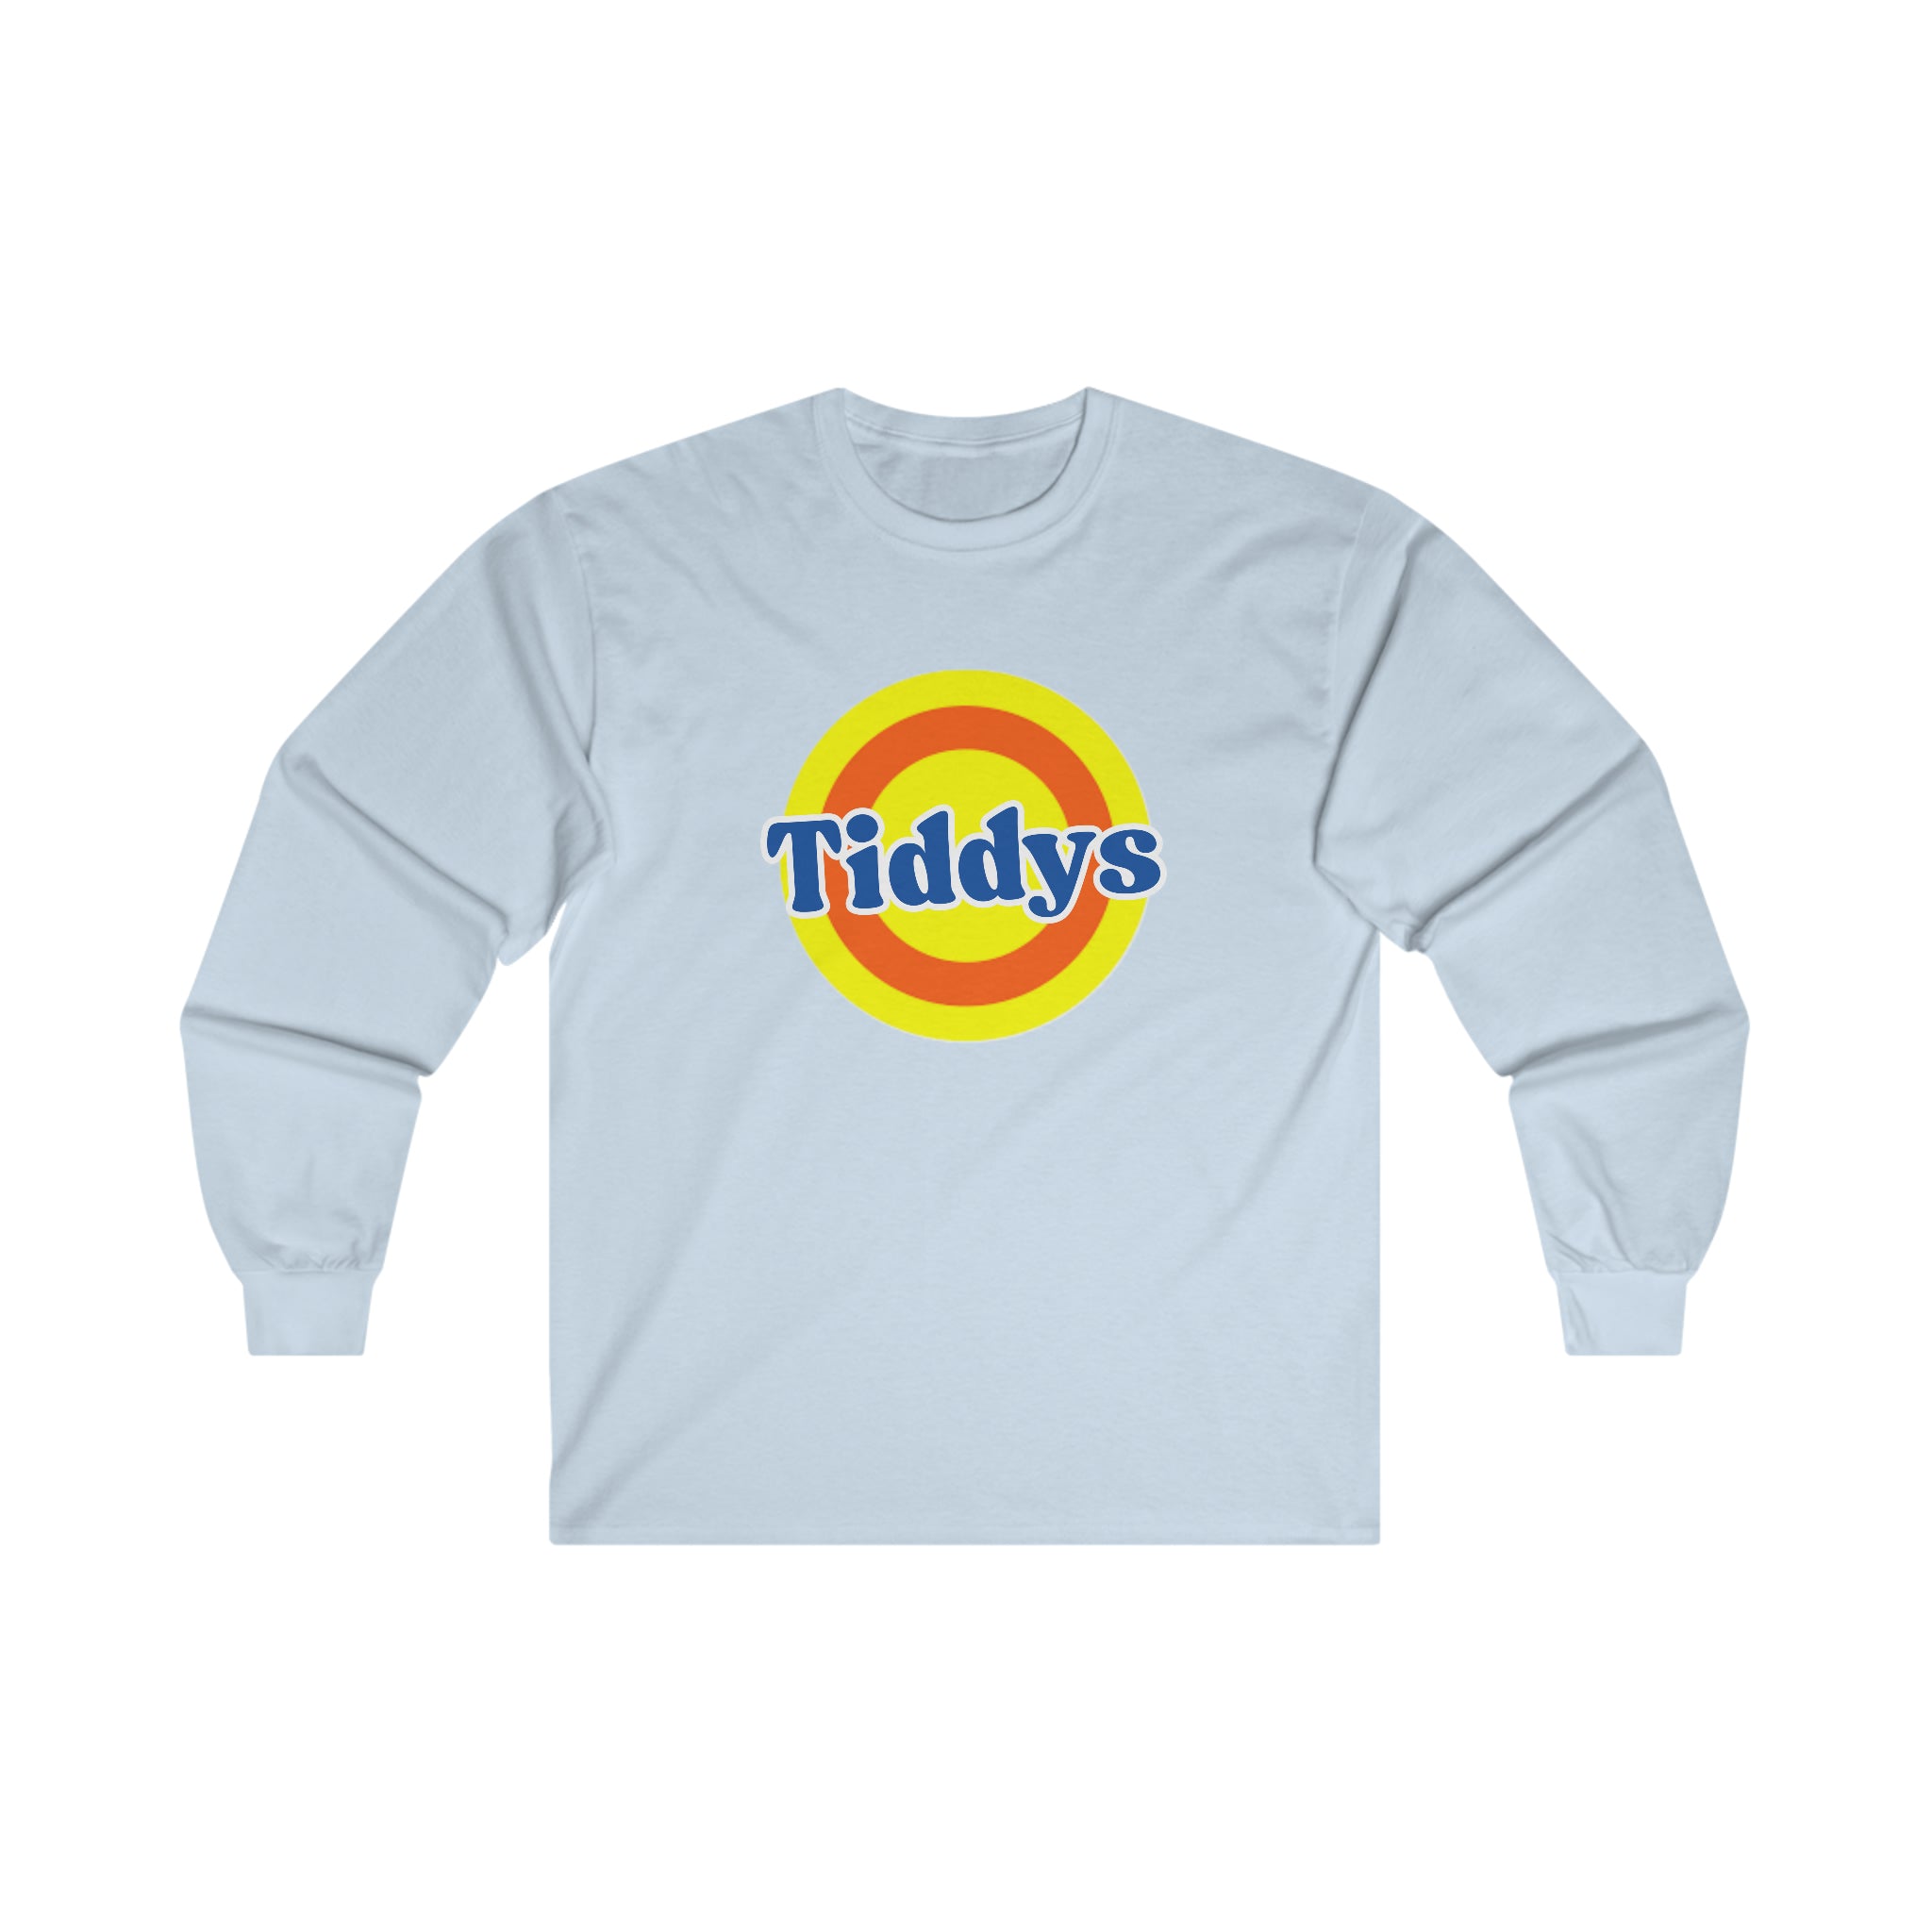 Tiddys